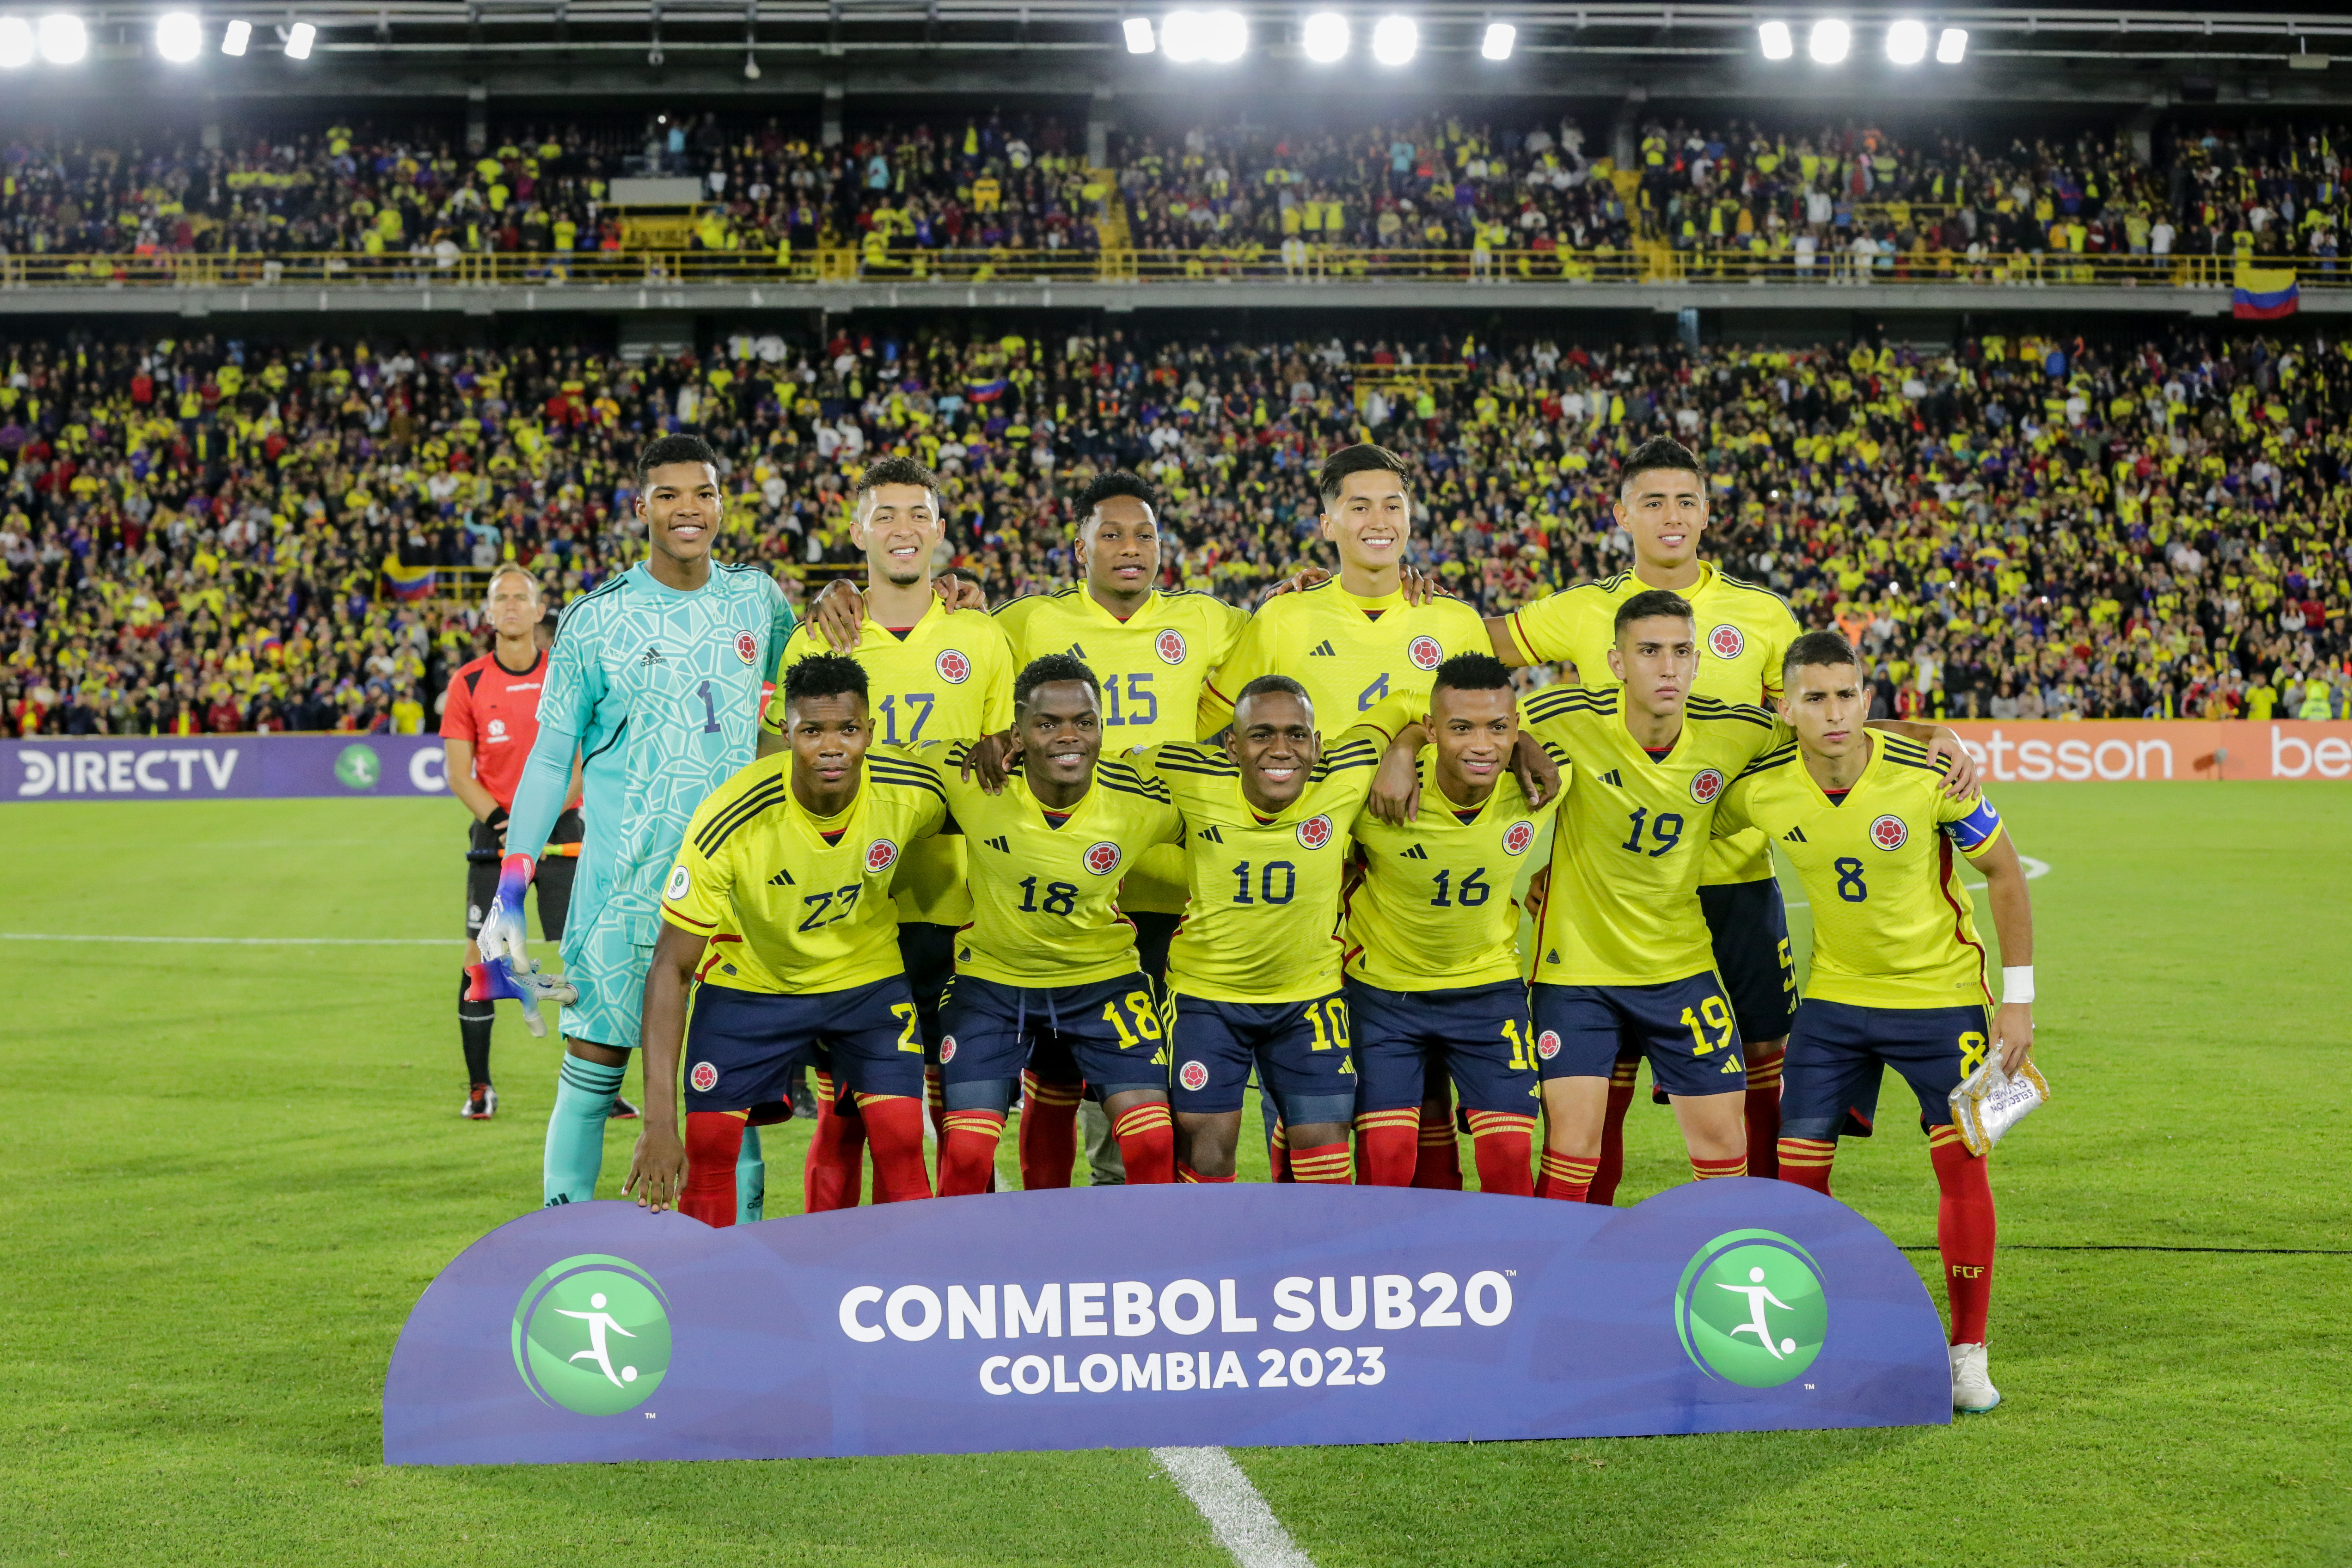 Sin jugar, la selección Colombia clasificó al Mundial sub-20 de Indonesia 2023